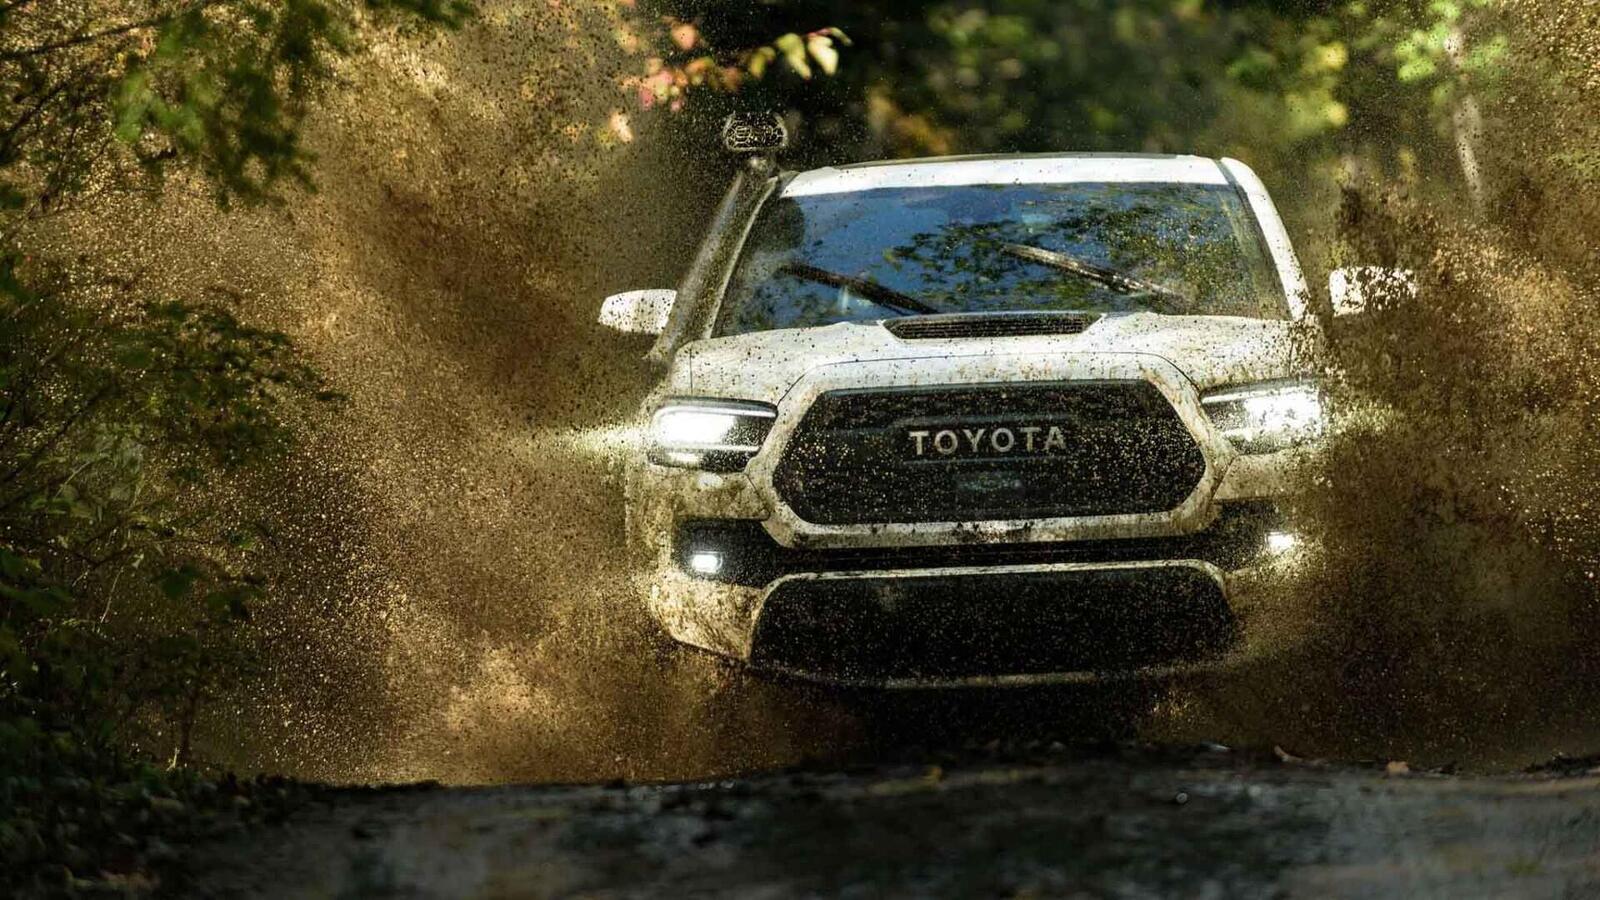 Xem trước bán tải Toyota Tacoma 2020 mới trước ngày ra mắt đối thủ đáng gờm Ford Ranger - Hình 4